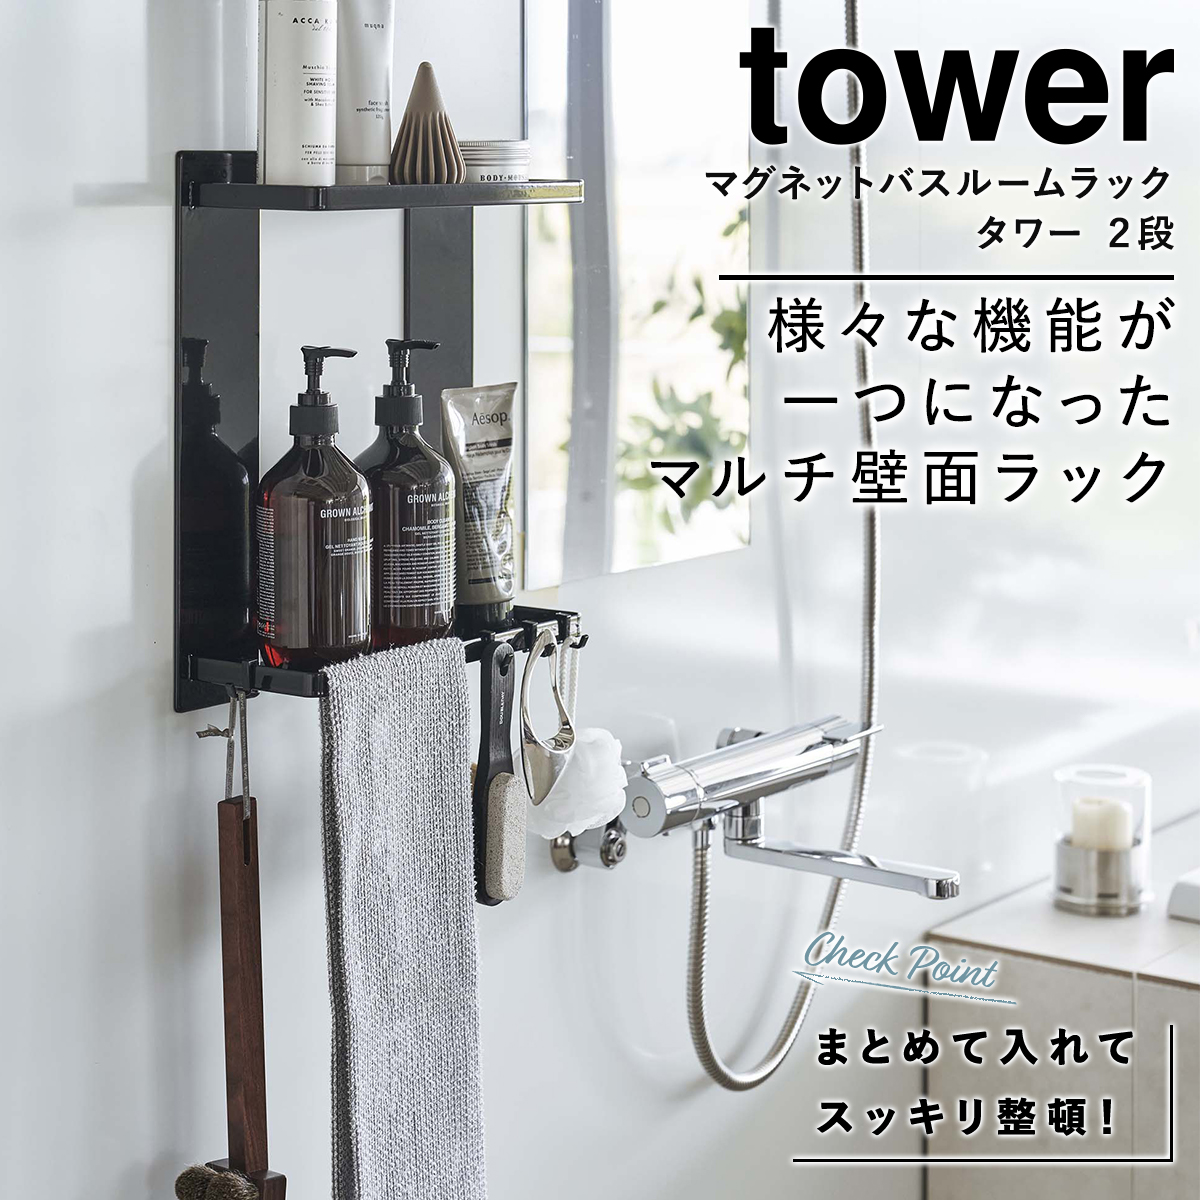 マグネットバスルームラック タワー 浴室 お風呂 2段 山崎実業 tower 磁石 整理 ホワイト ブラック yamazaki 8178 8179